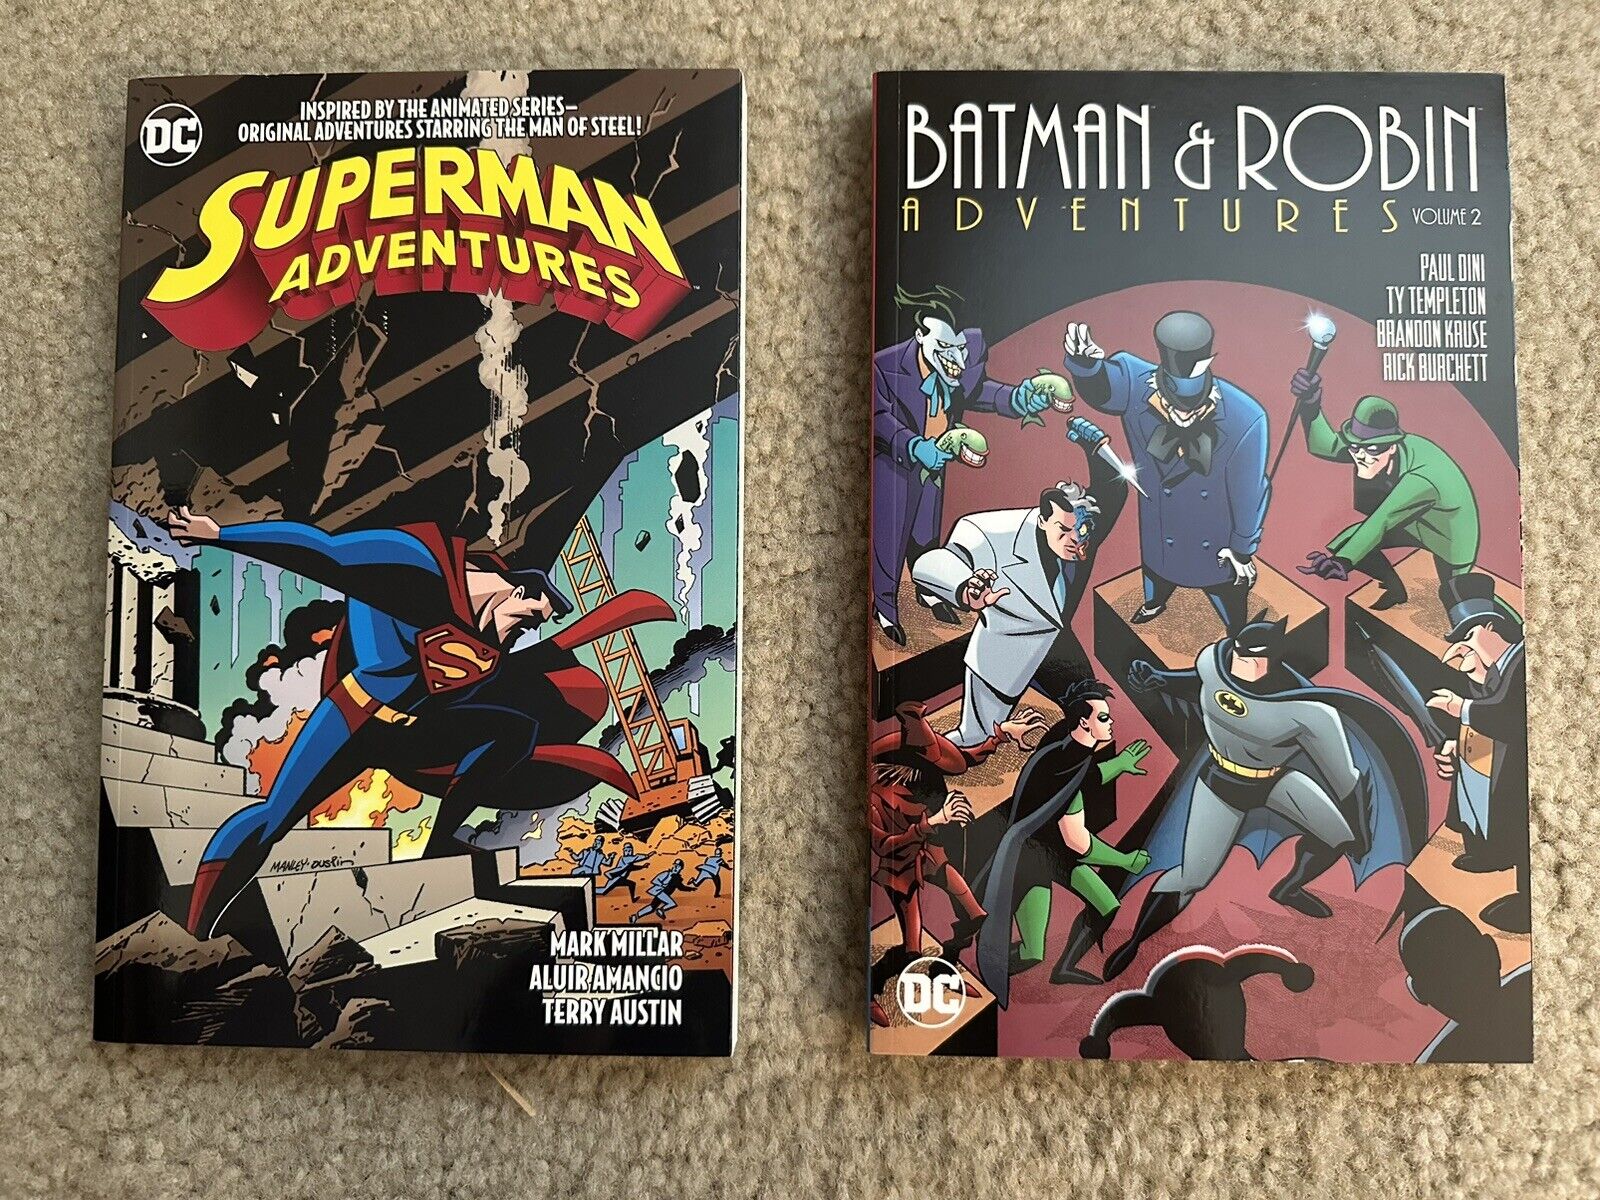 BATMAN & ROBIN ADVENTURES VOL 2 & SUPERMAN ADVENTURES VOL 4 - MINT DC COMICS